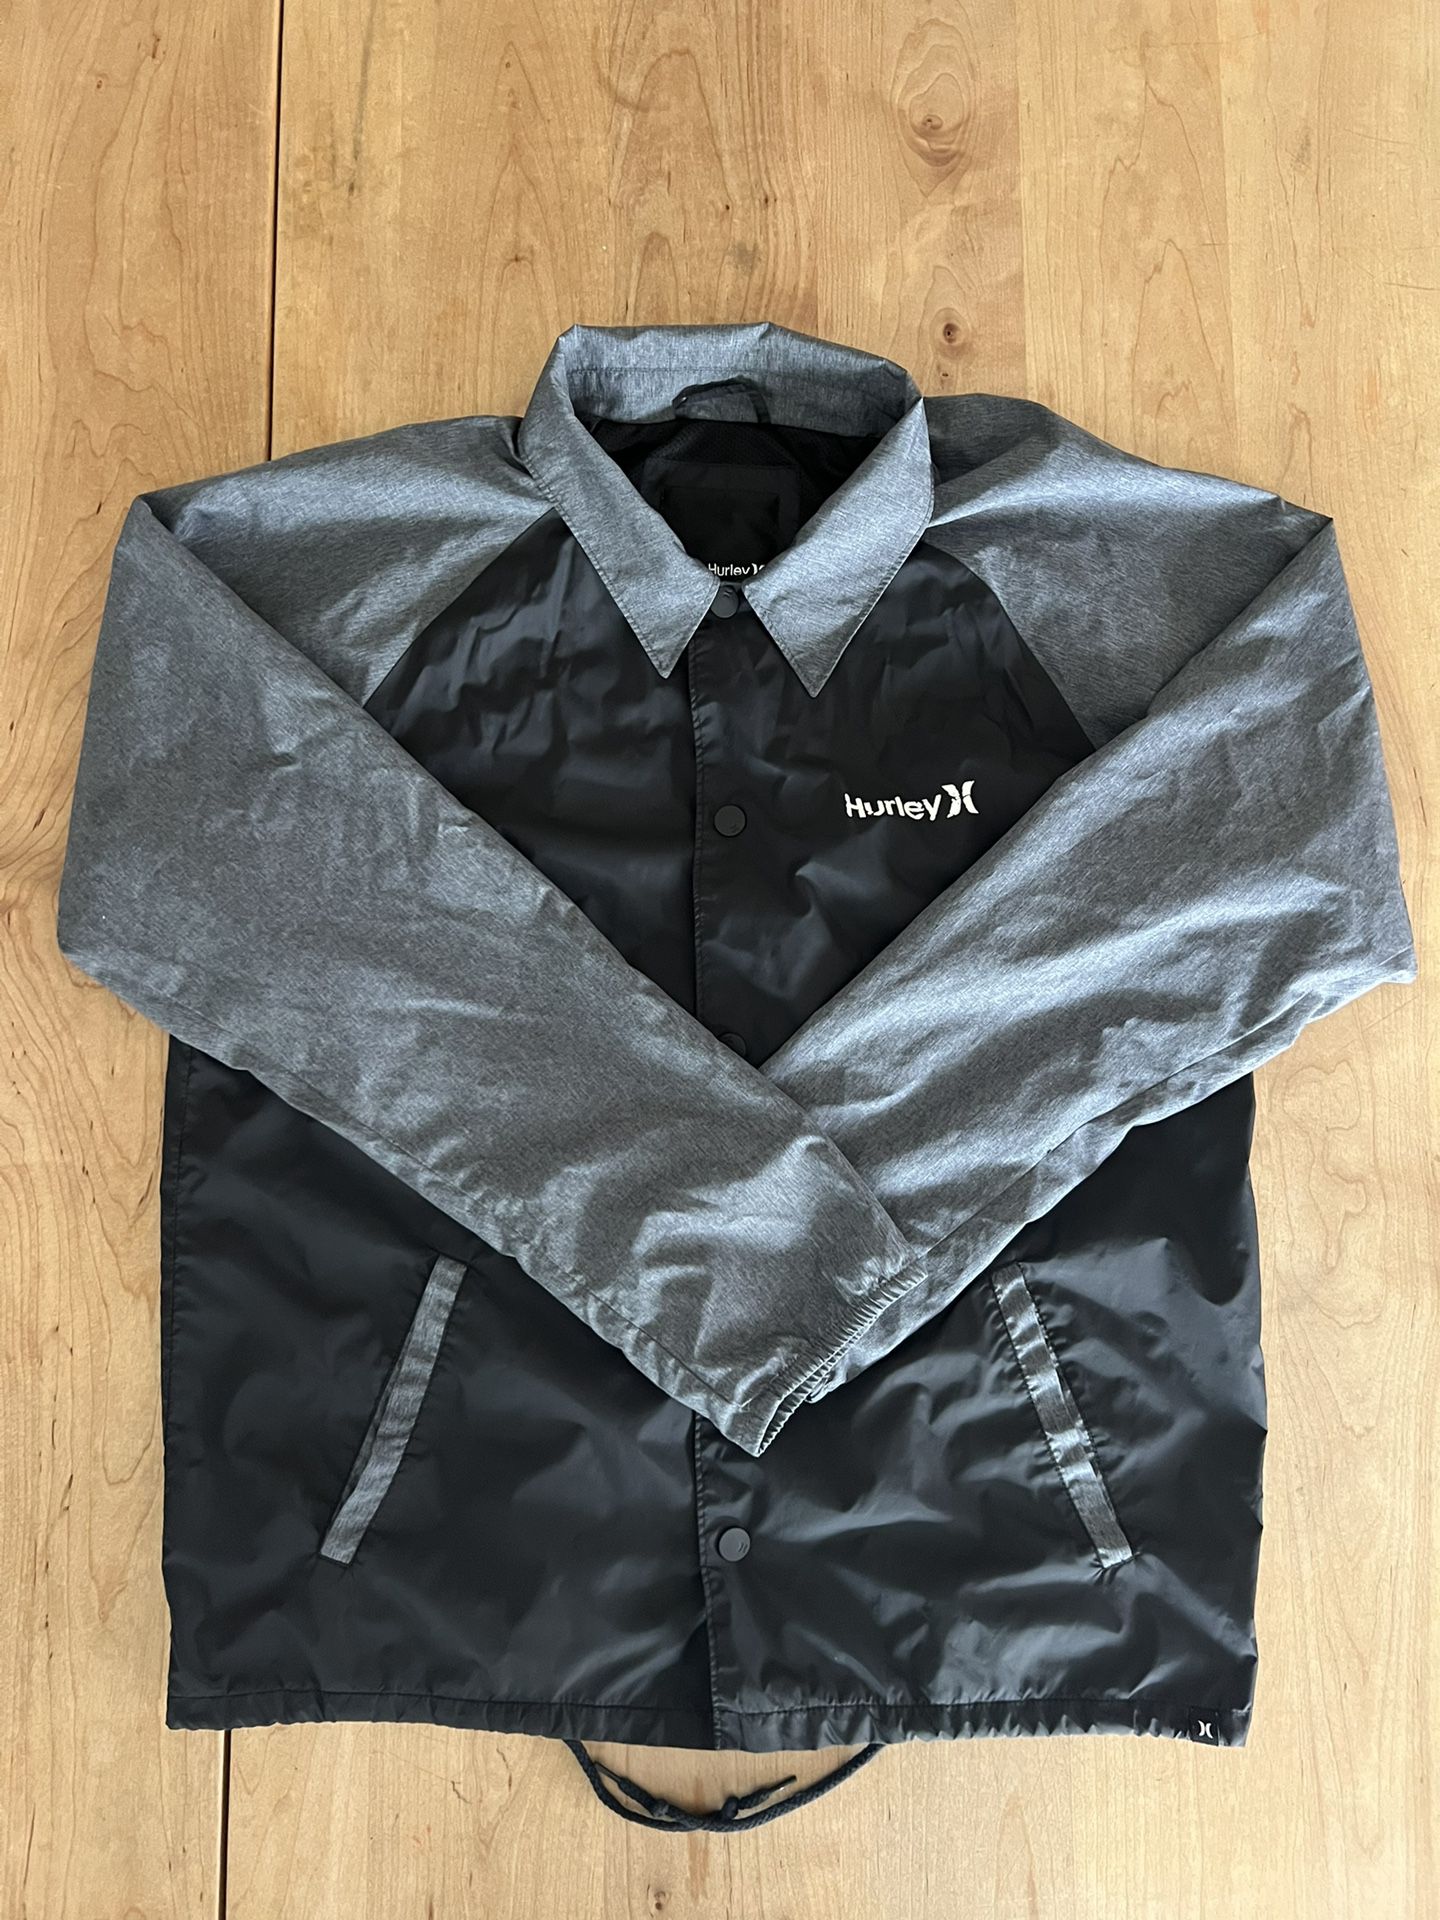 Hurley Windbreaker Jacket Men’s Medium Excellent Condition